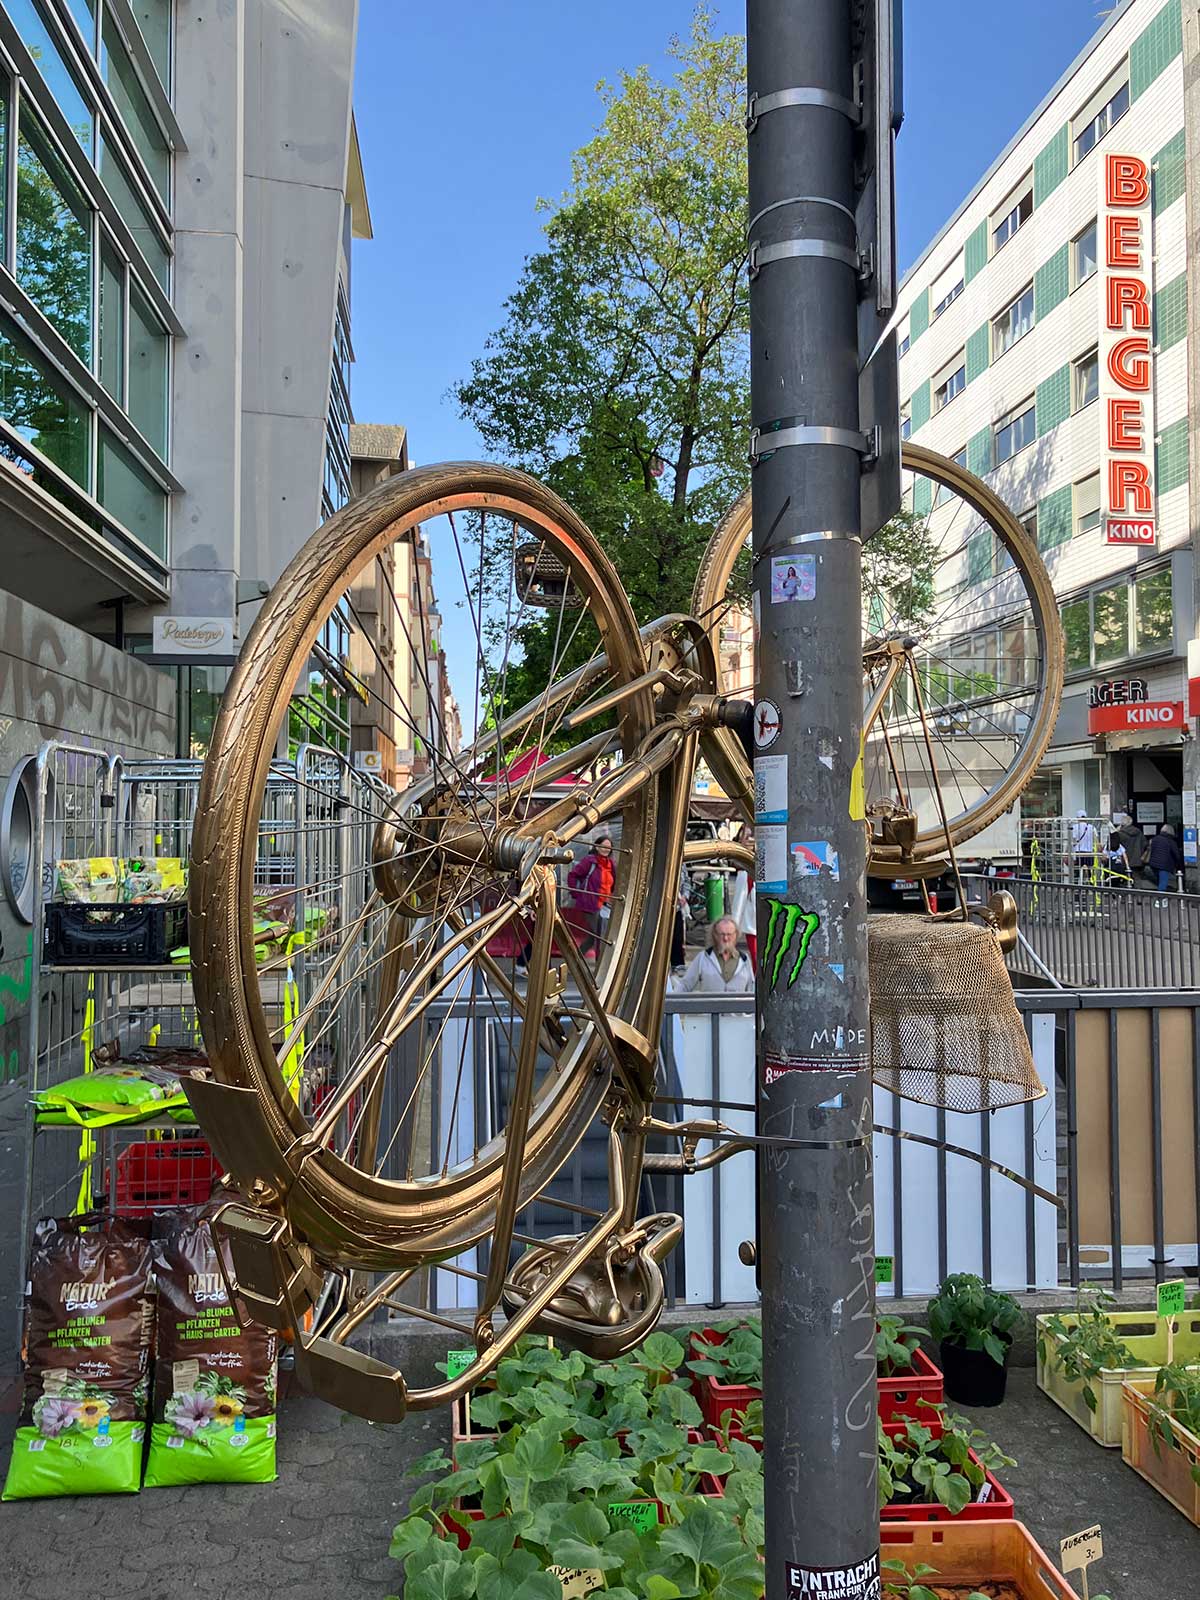 Fahrrad in Gold an mast mit U-Bahn-Schild Bornheim Mitte